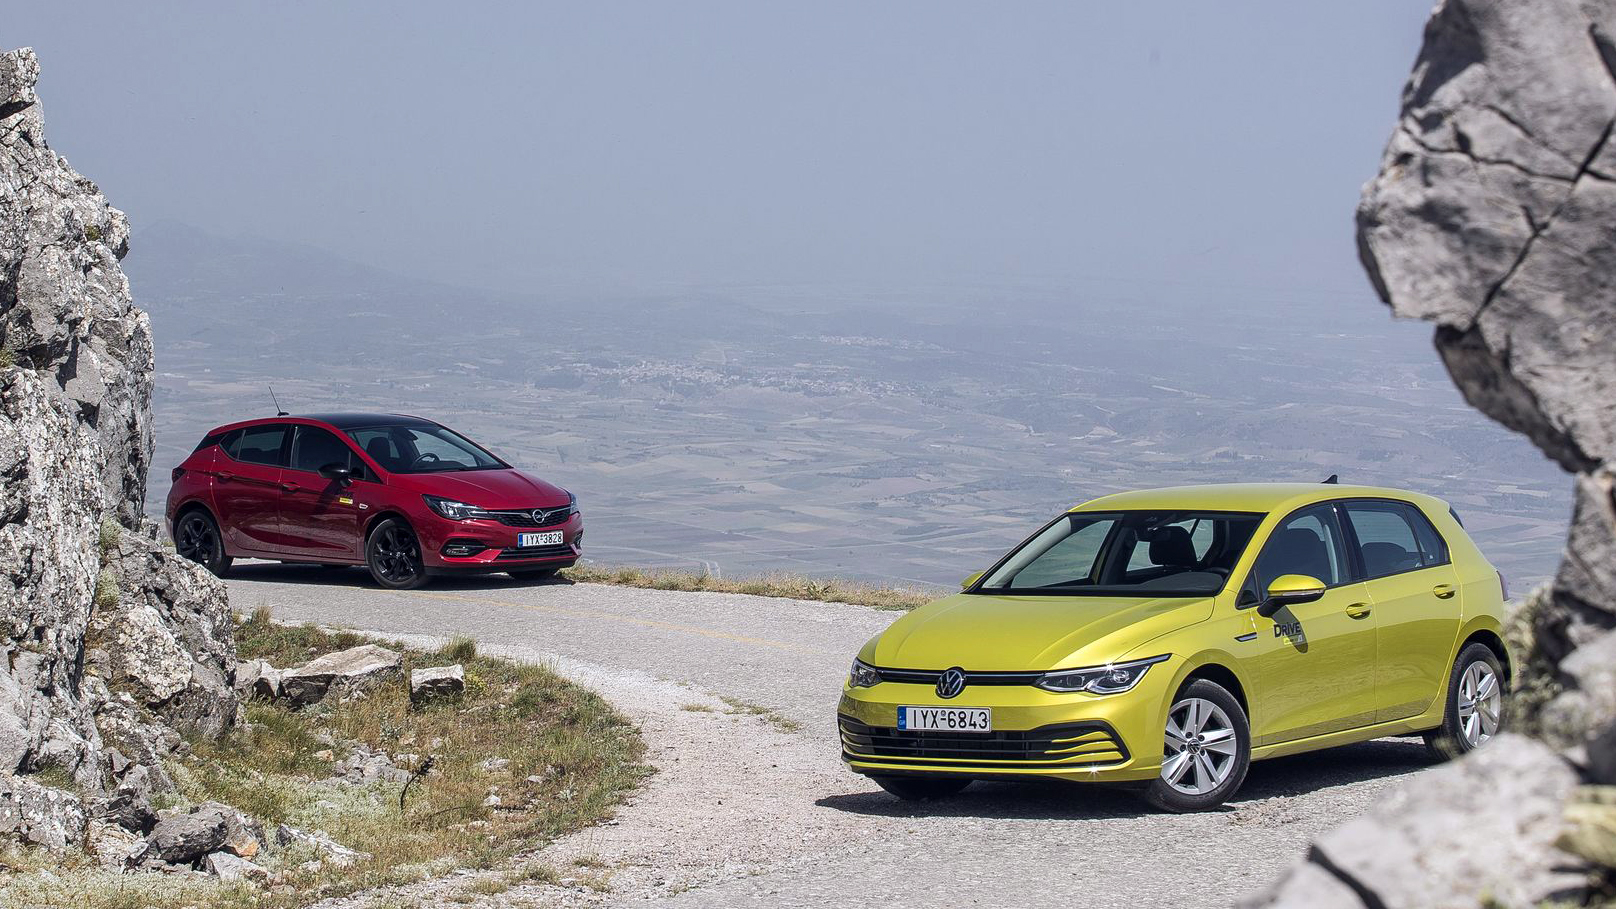 Ντέρμπι «αιωνίων»: Συγκρίνουμε το νέο VW Golf απέναντι στο Opel Astra! [pics]